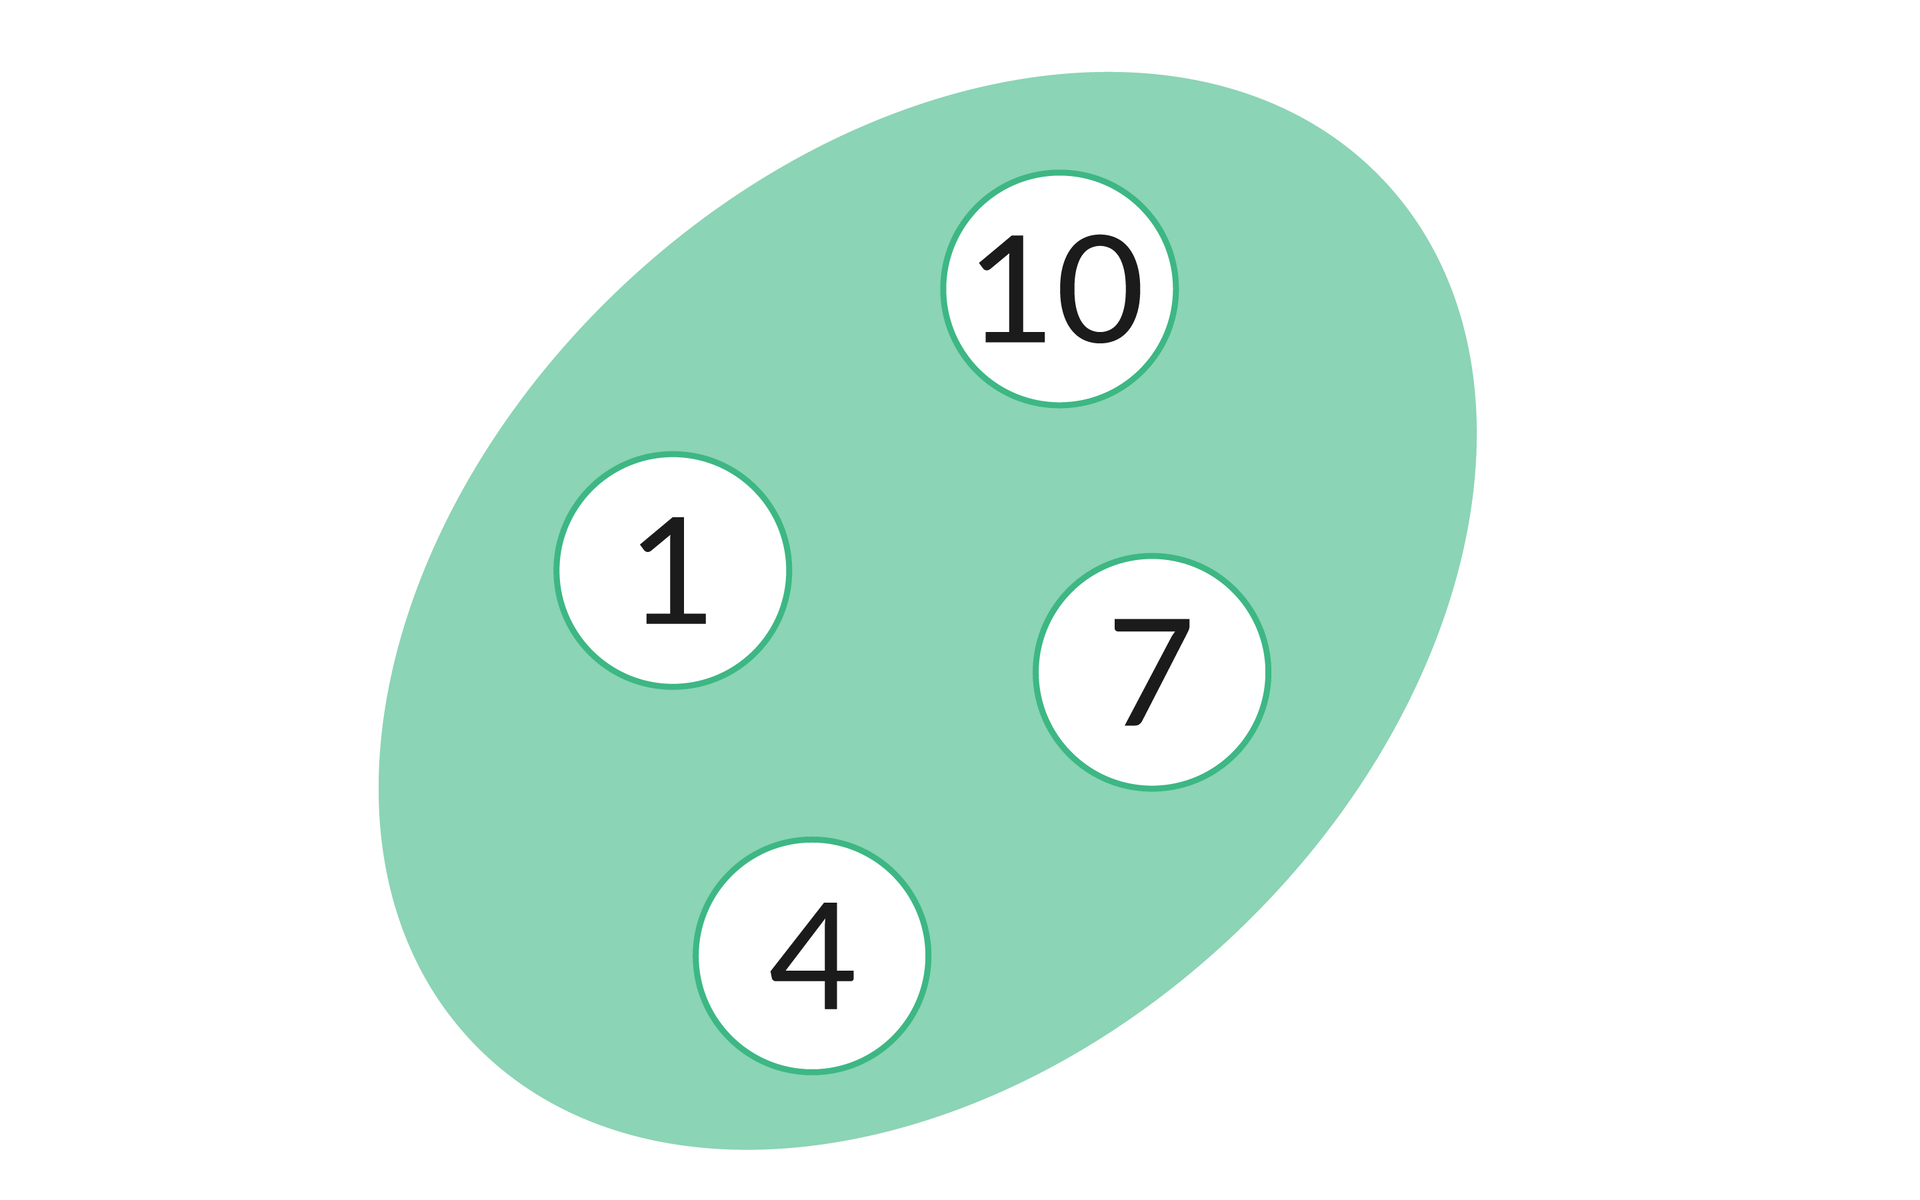 Ilustracja przedstawia eliptyczny zbiór z zielonym wnętrzem. W zbiorze znajdują się białe koła, a w każdym z nich wpisana jest jedna z następujących liczb: 1 po lewo, 4 w dolnej części, 7 po prawo, 10 w górnej części zbioru.